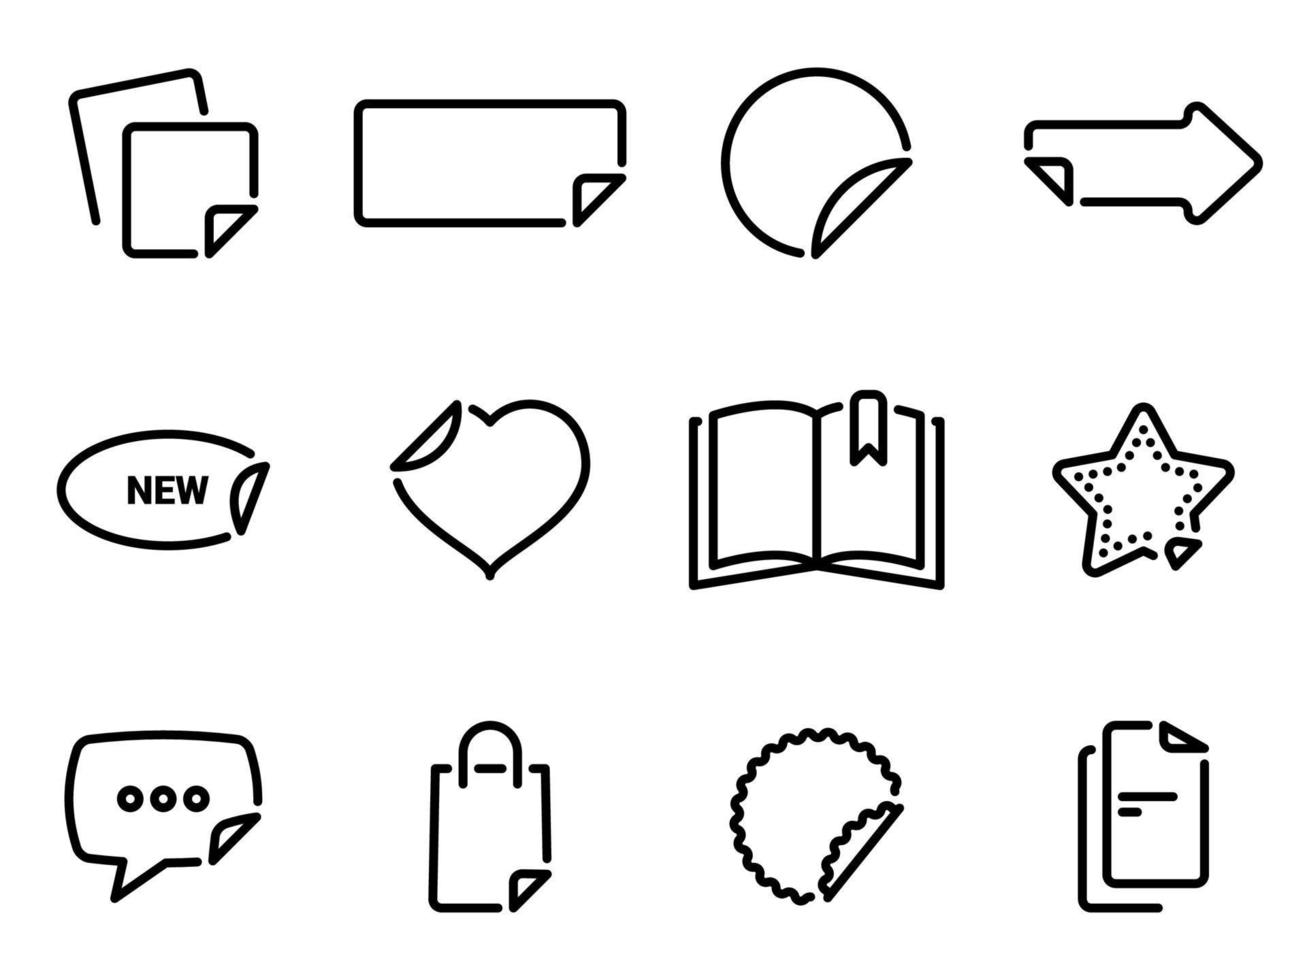 iconos vectoriales simples. ilustración plana sobre pegatinas temáticas, archivos y marcadores vector